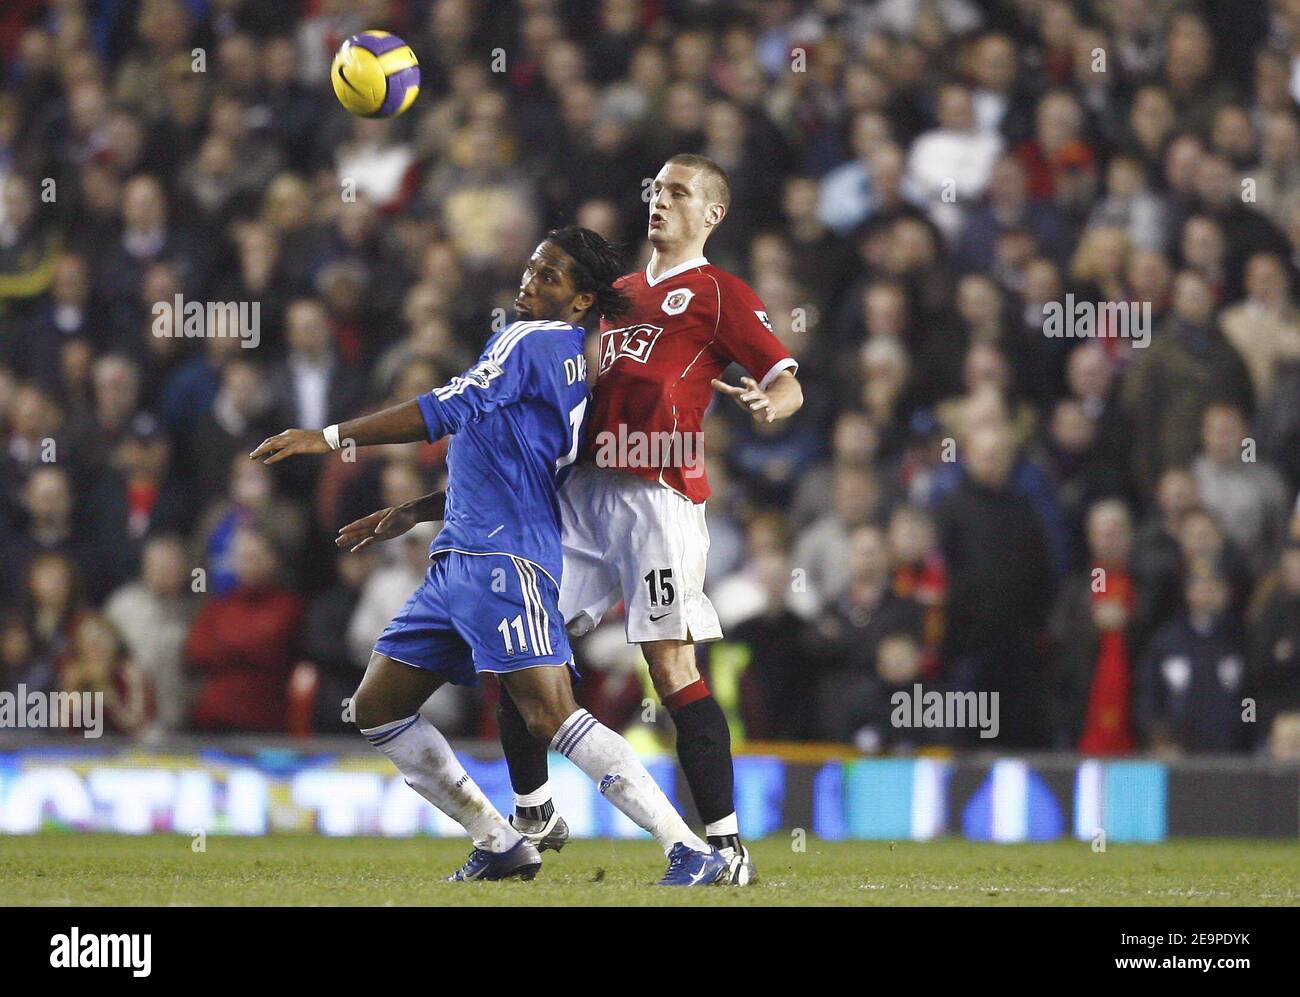 Didier Drogba de Chelsea pendant la première FA Barclays, Manchester United contre Chelsea au stade Old Trafford à Manchester, Royaume-Uni, le 26 novembre 2006. La correspondance s'est terminée par un tirage de 1-1. Photo de Christian Liewig/ABACAPRESS.COM Banque D'Images